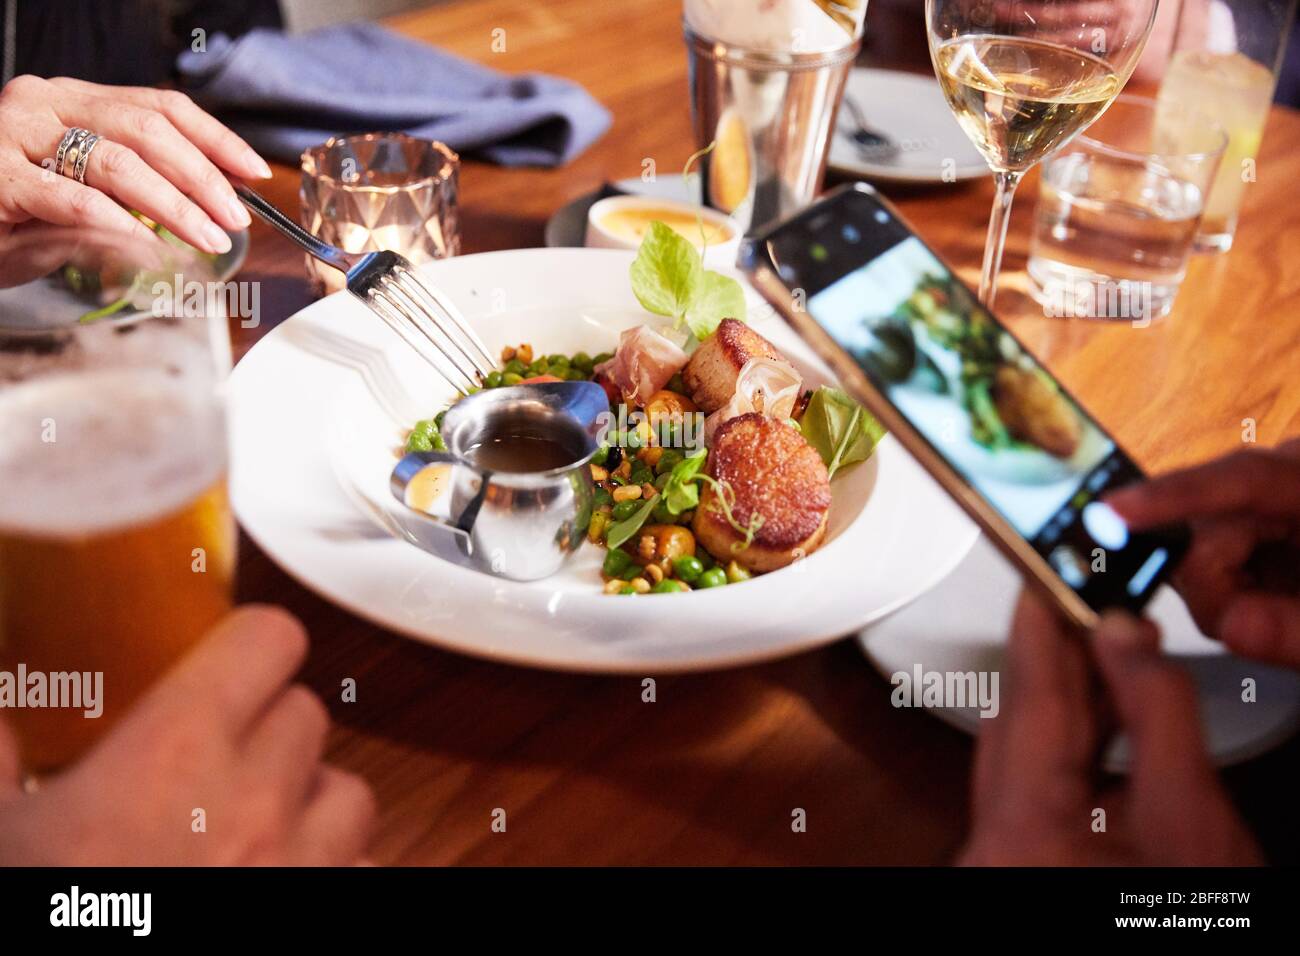 Eine Foodie macht vor dem Essen ein Foto von ihrer Mahlzeit für soziale Medien Stockfoto